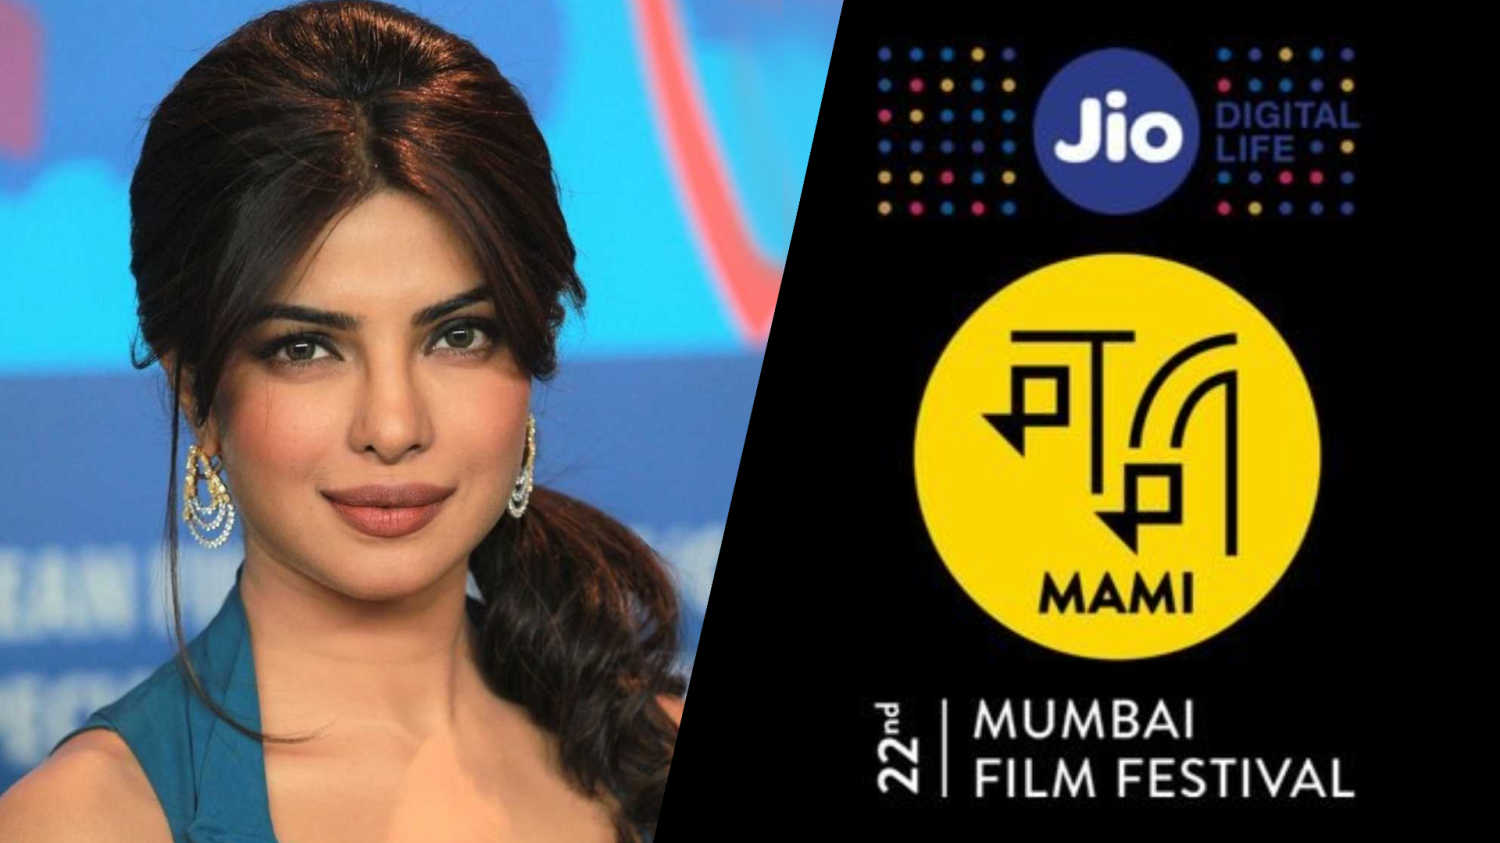 Priyanka Chopra Jonas named MAMI film festival chairperson